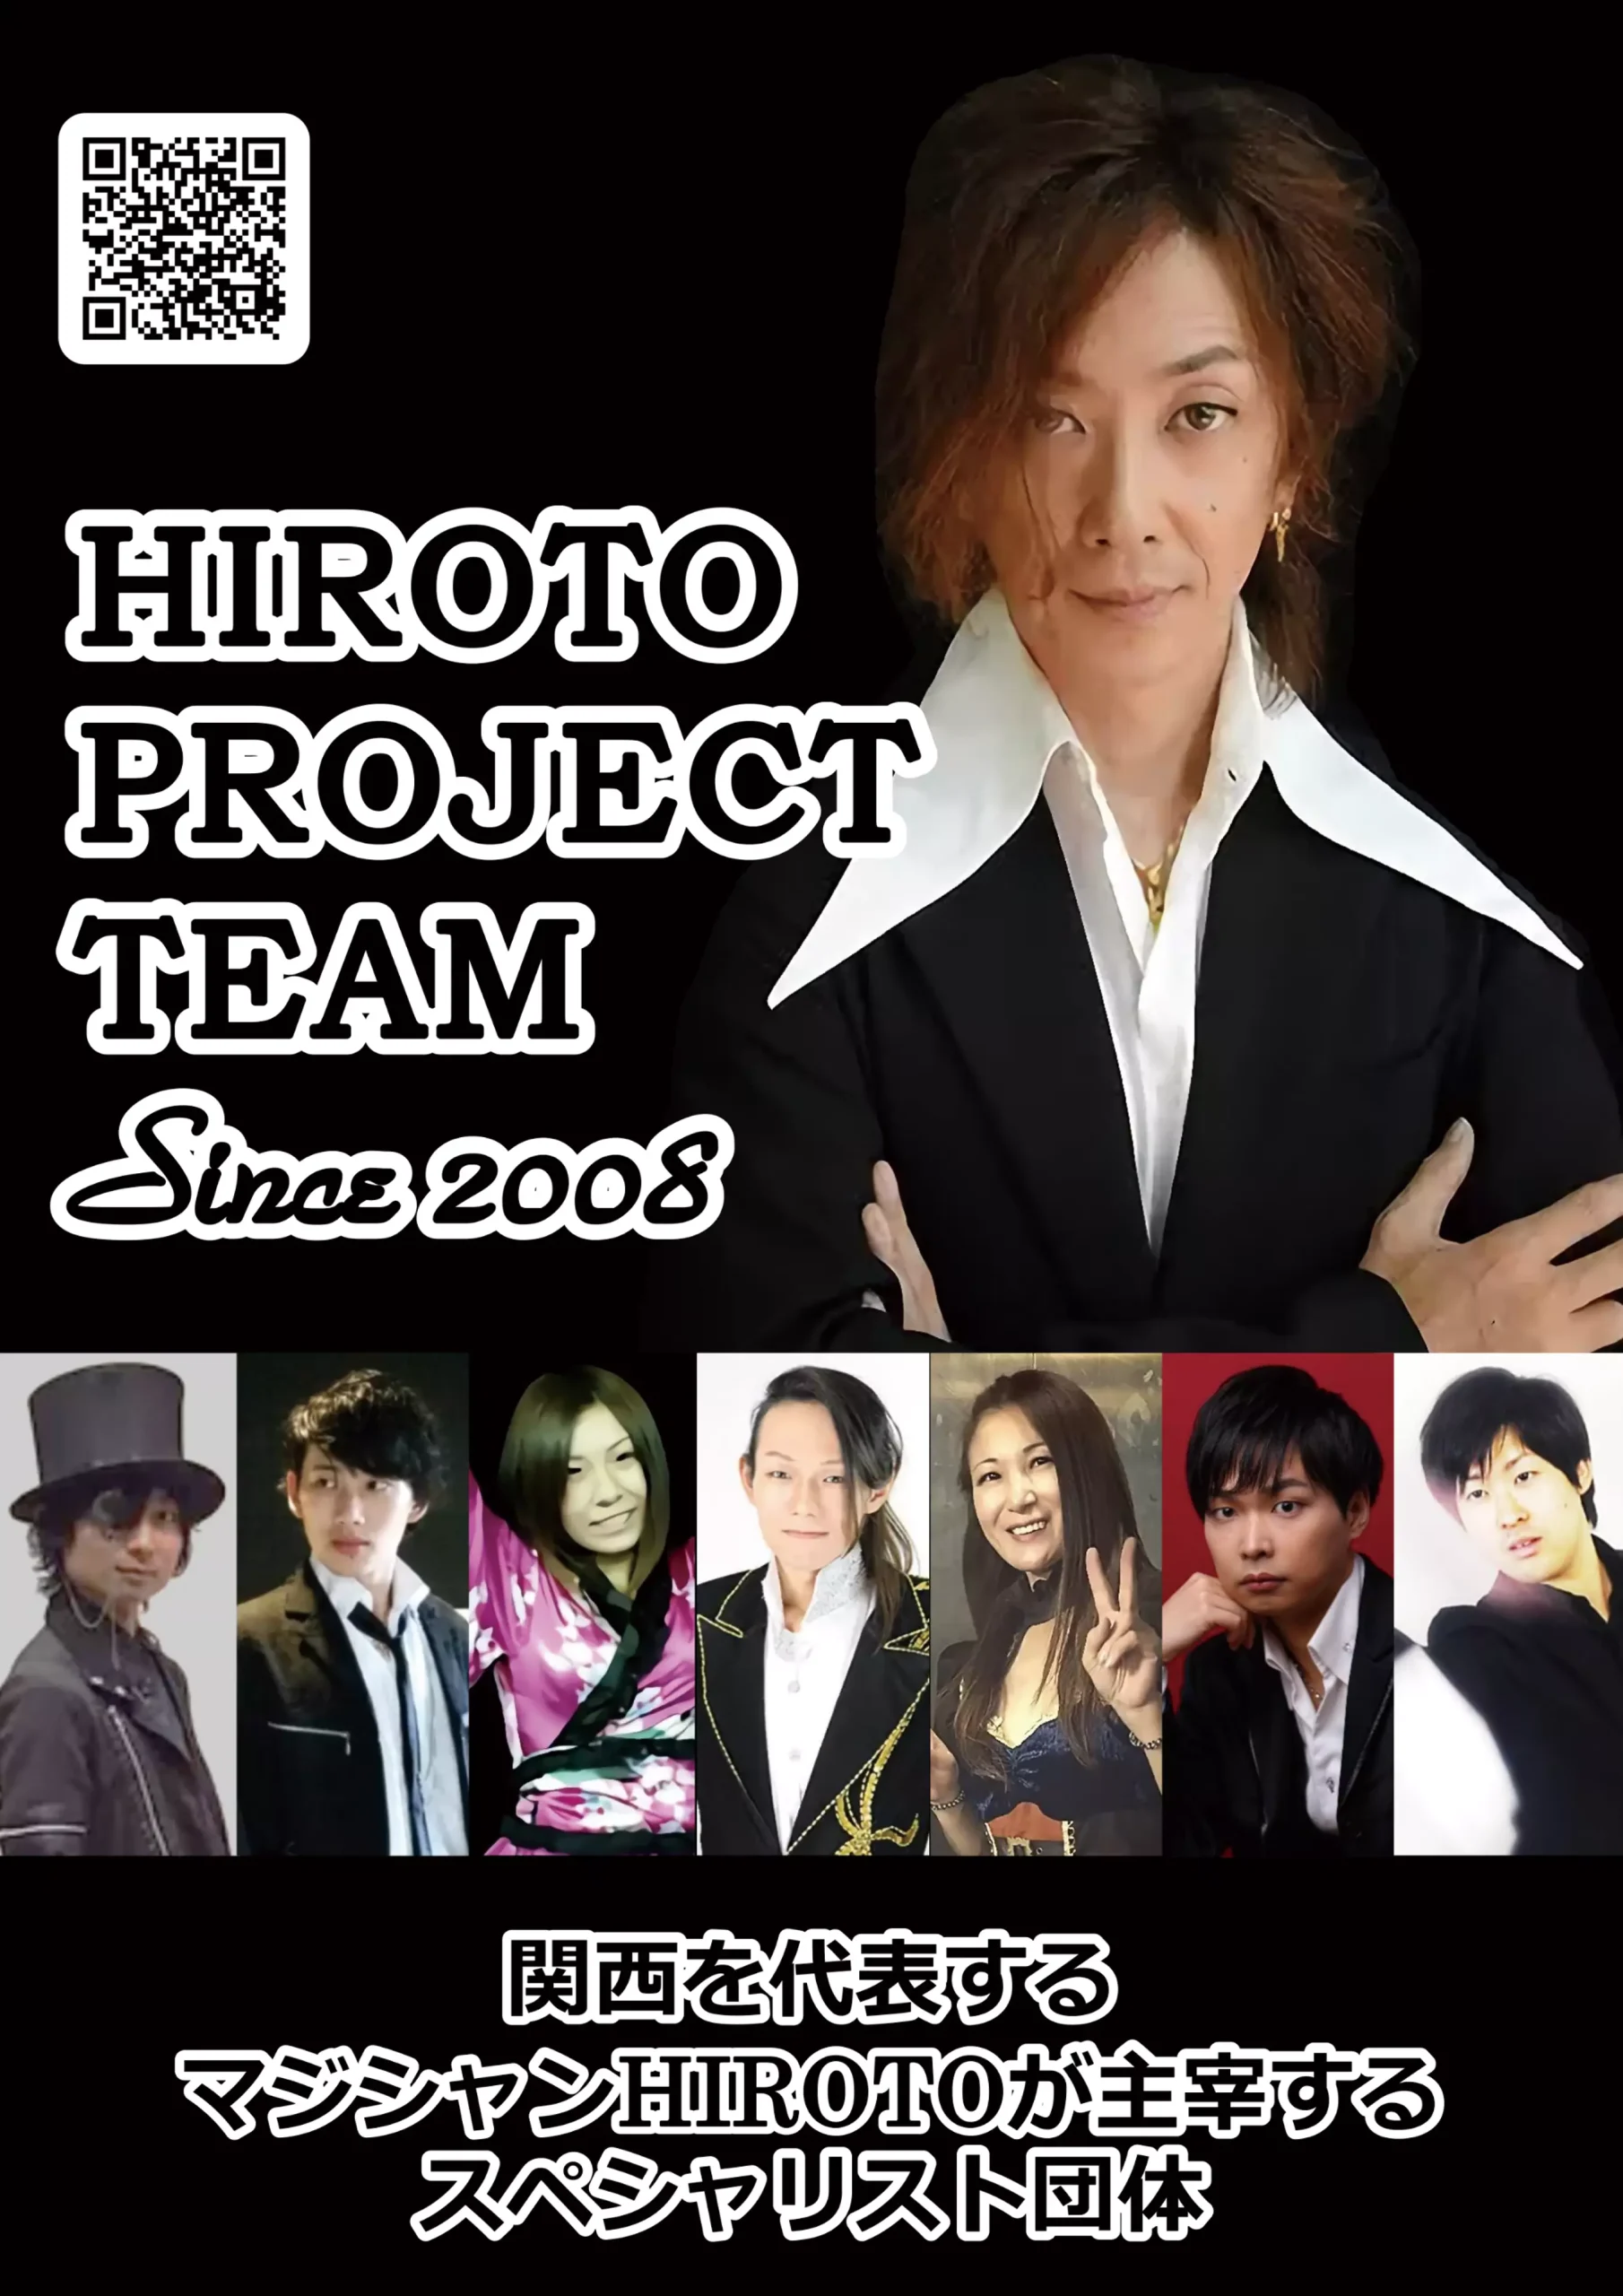 ヒロトプロジェクトチーム